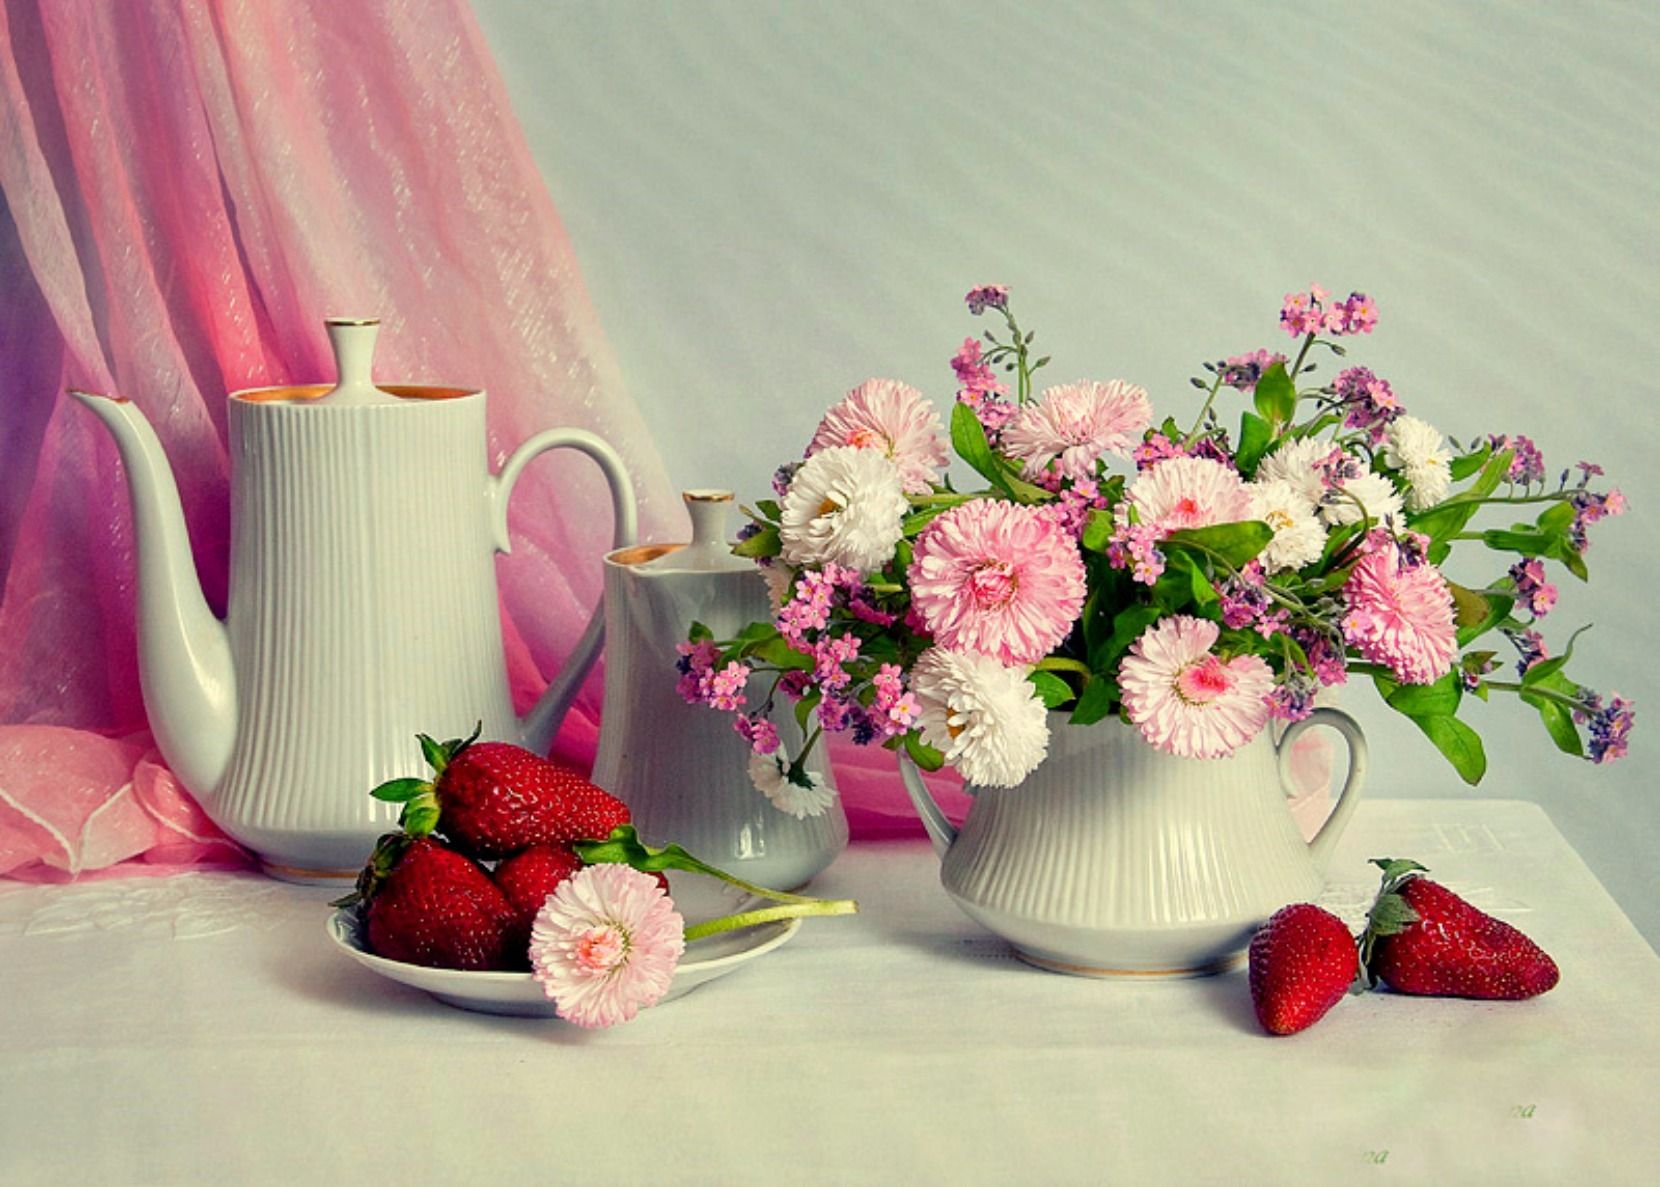 Добрый день картинки. Прекрасного утра и настроения. Открытка прекрасный день. Доброго утра и замечательного дня. Хорошего настроения и удачного дня цветы.